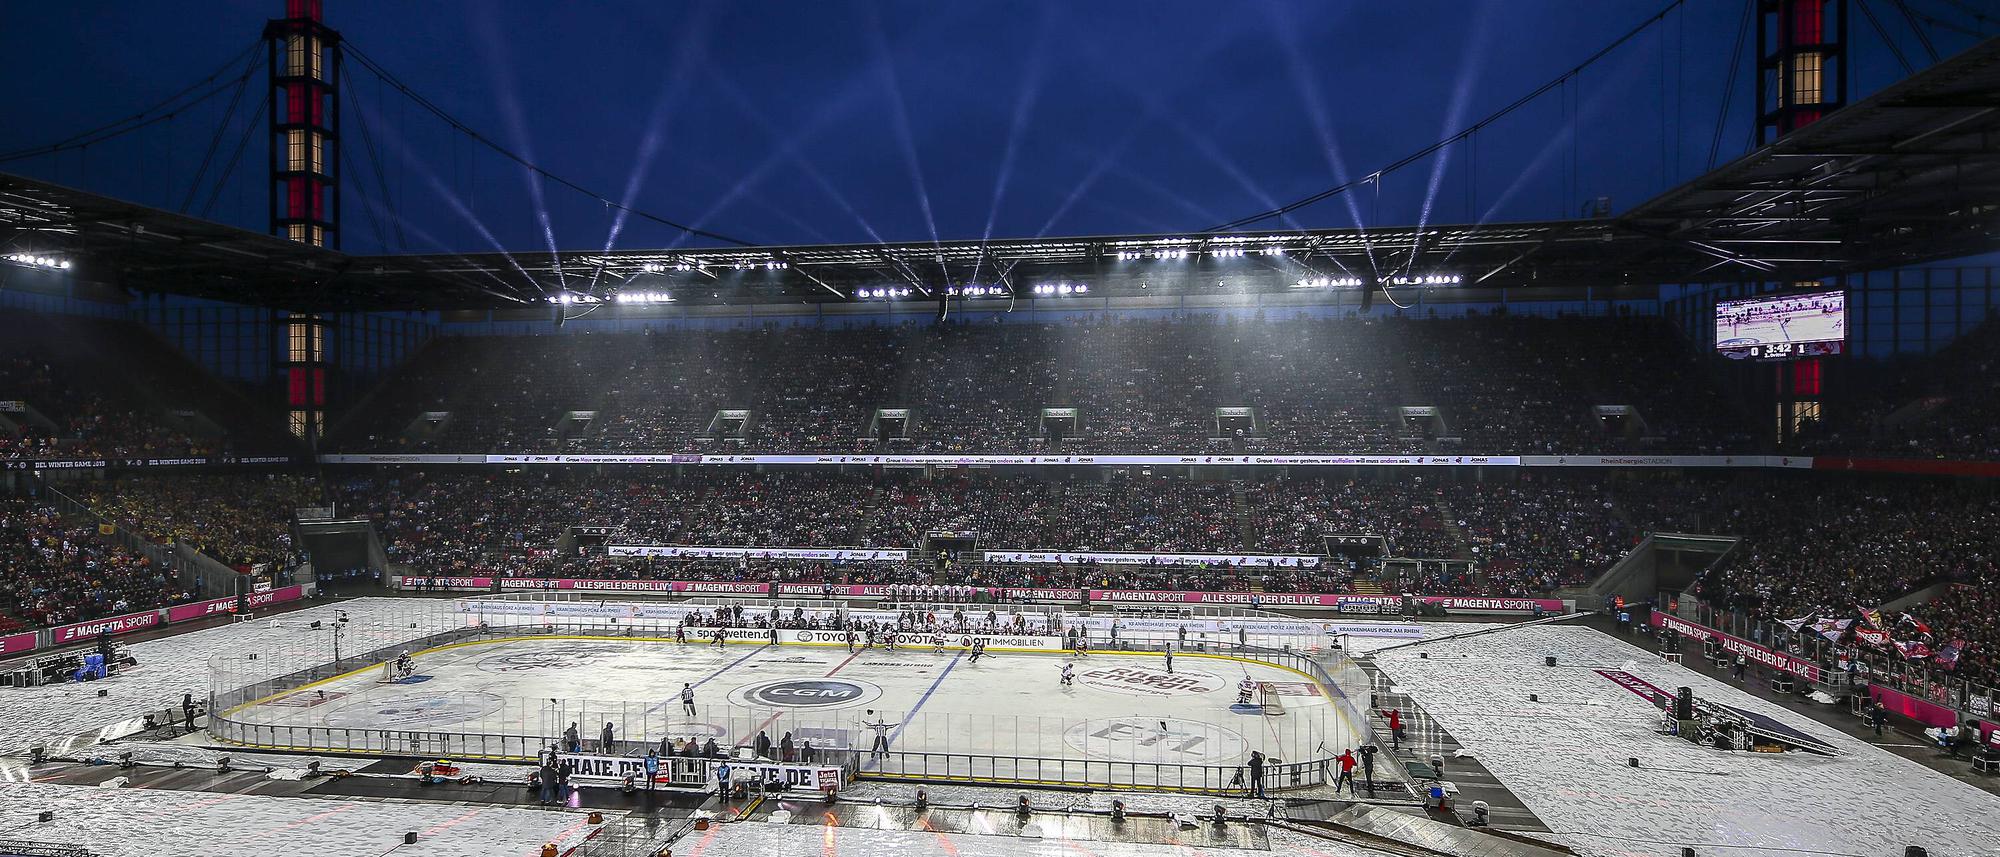 Eishockey im Fußballstadion Winter Game gegen Katar-Stimmung